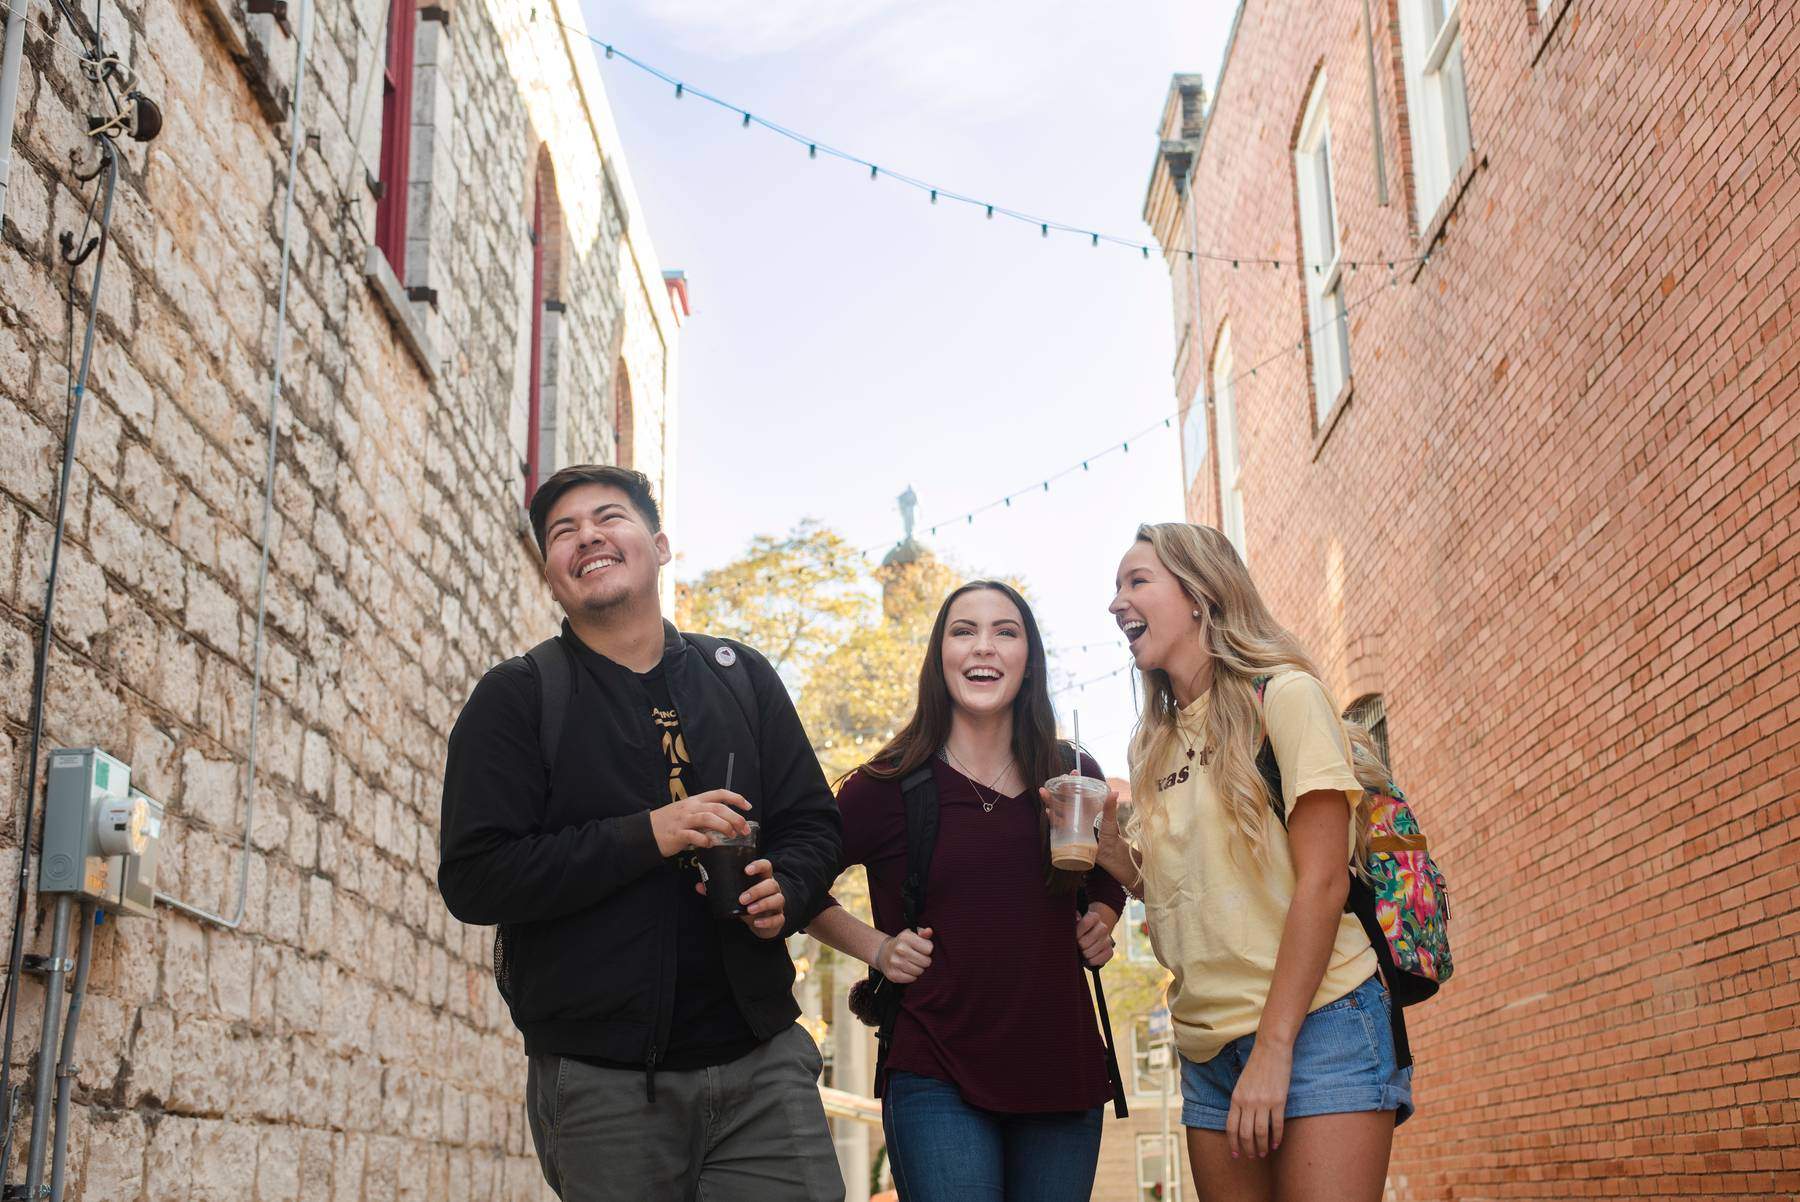 Three students standing in an alleyway between brick buildings.